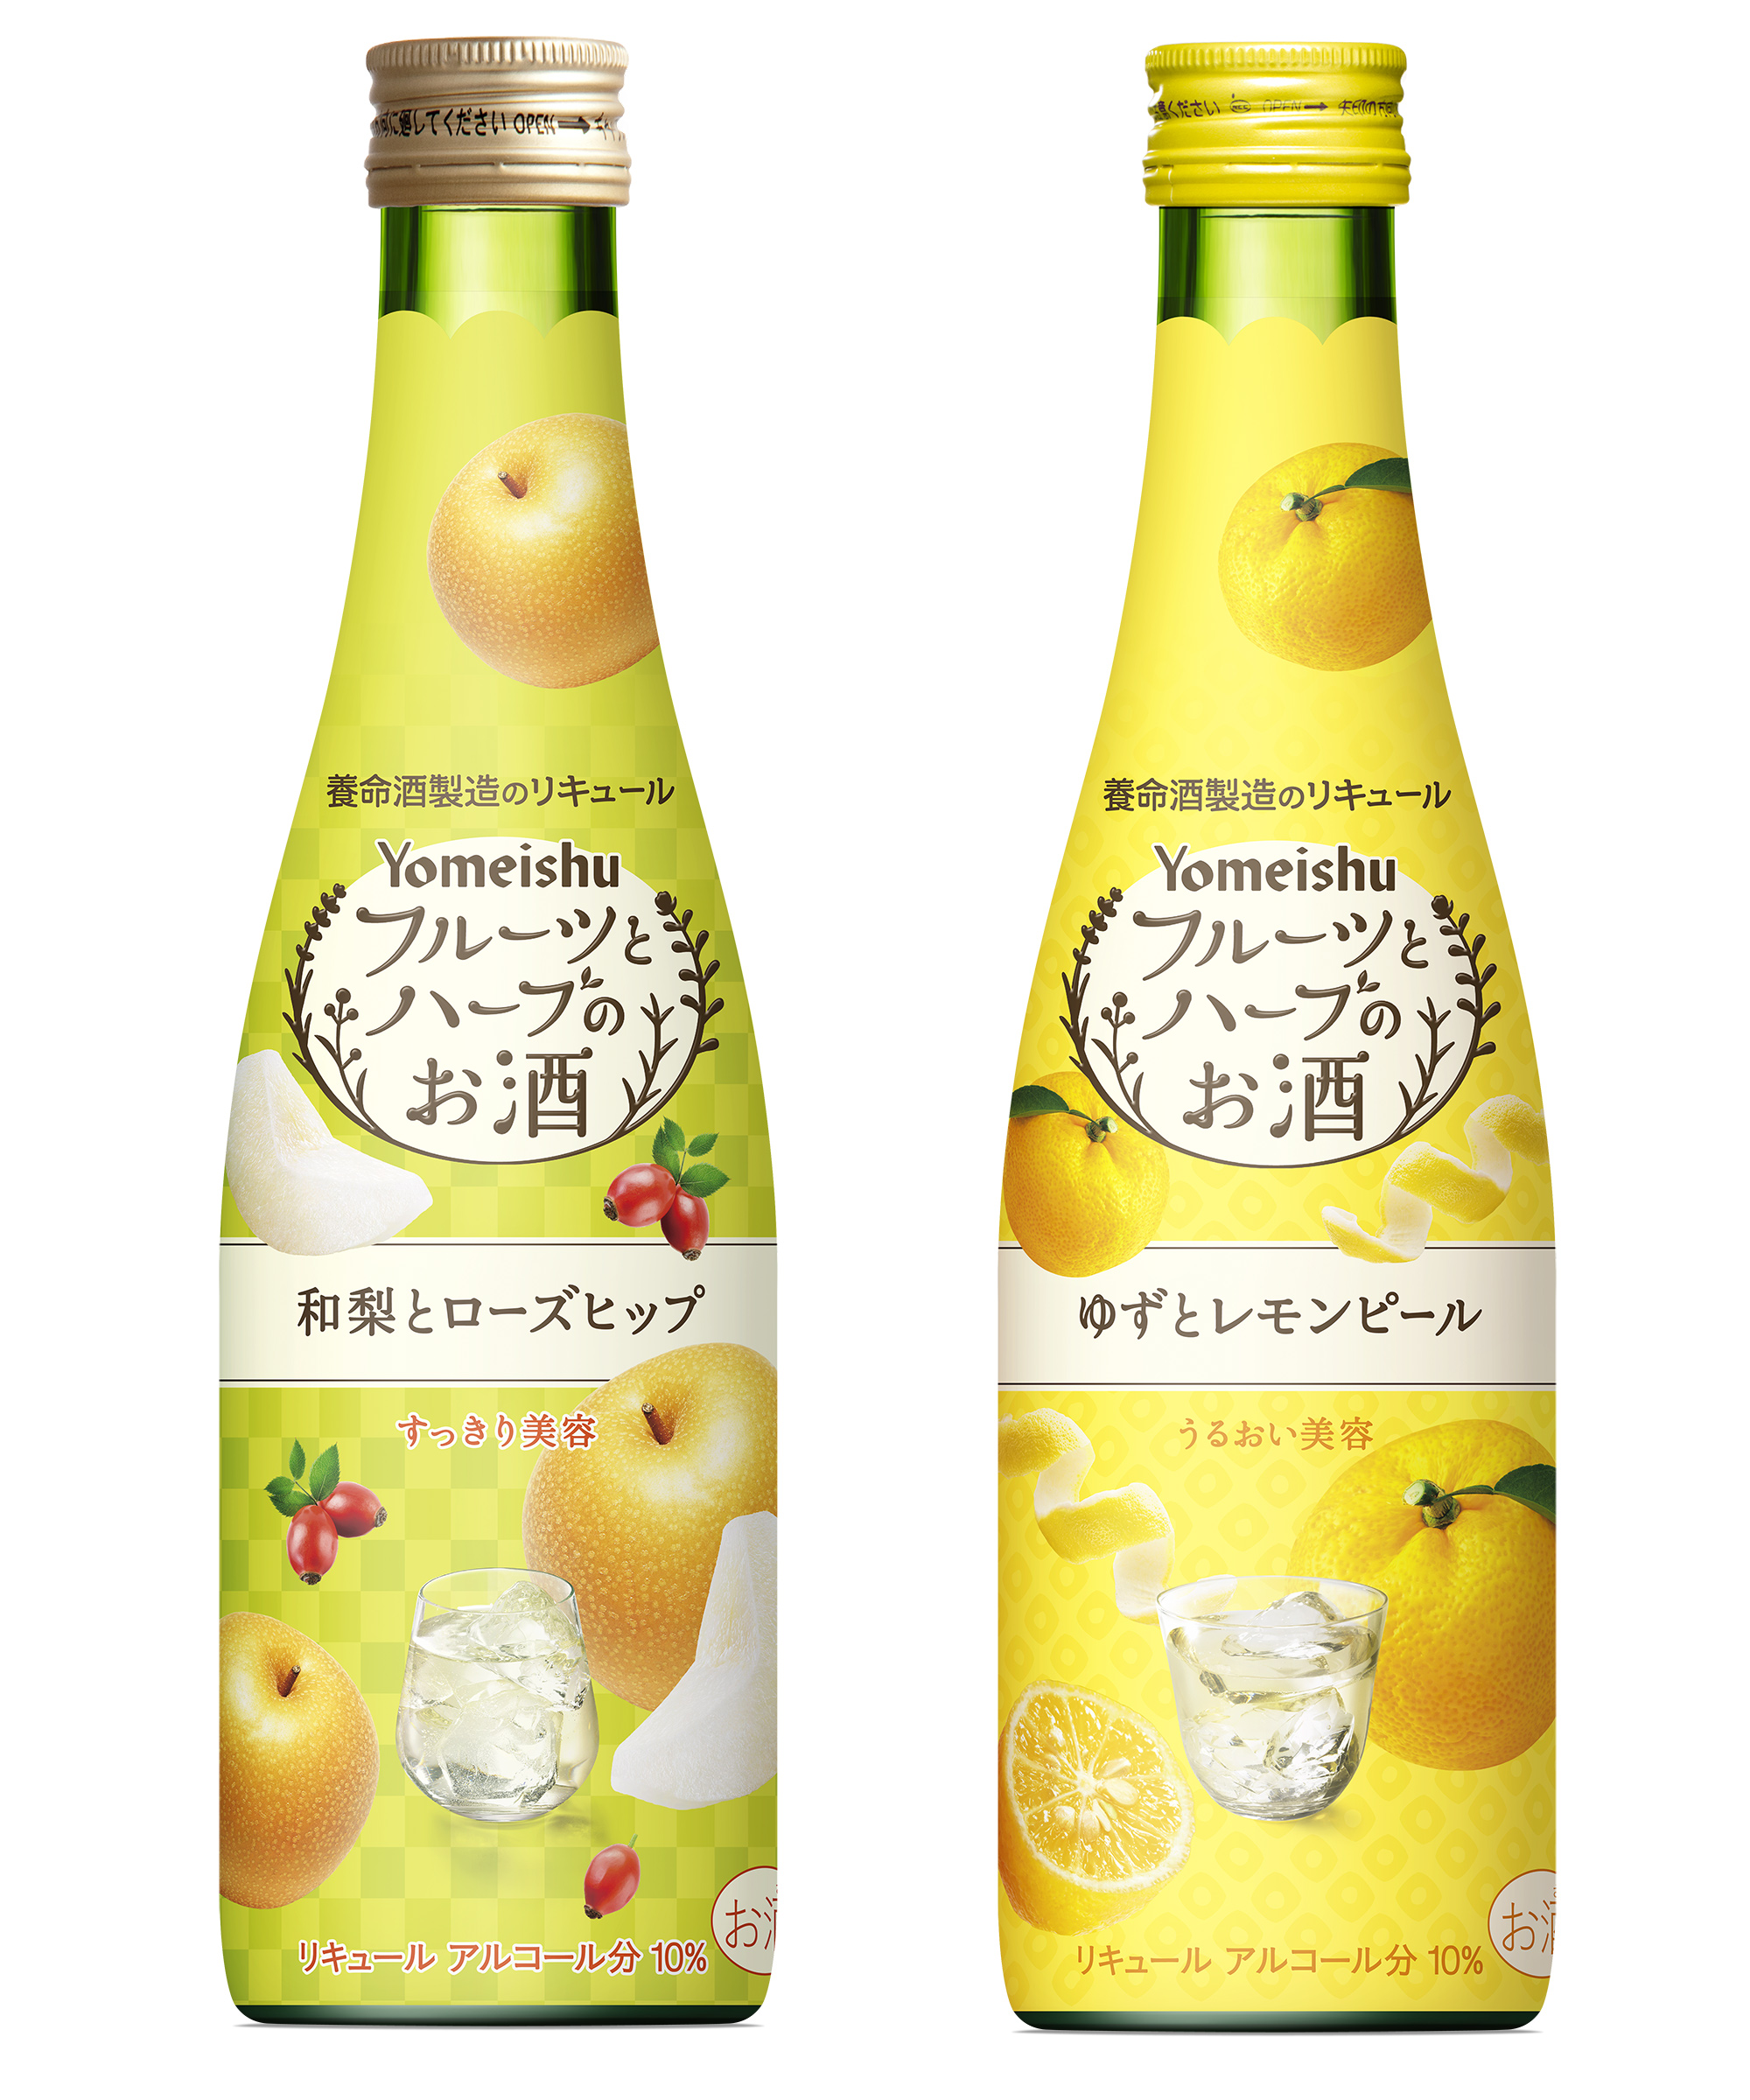 今度のフルハは 和梨 と ゆず 人気の フルーツとハーブのお酒 シリーズから期間限定 日本の秋冬を楽しむフレーバーが新発売 養命酒製造株式会社のプレスリリース